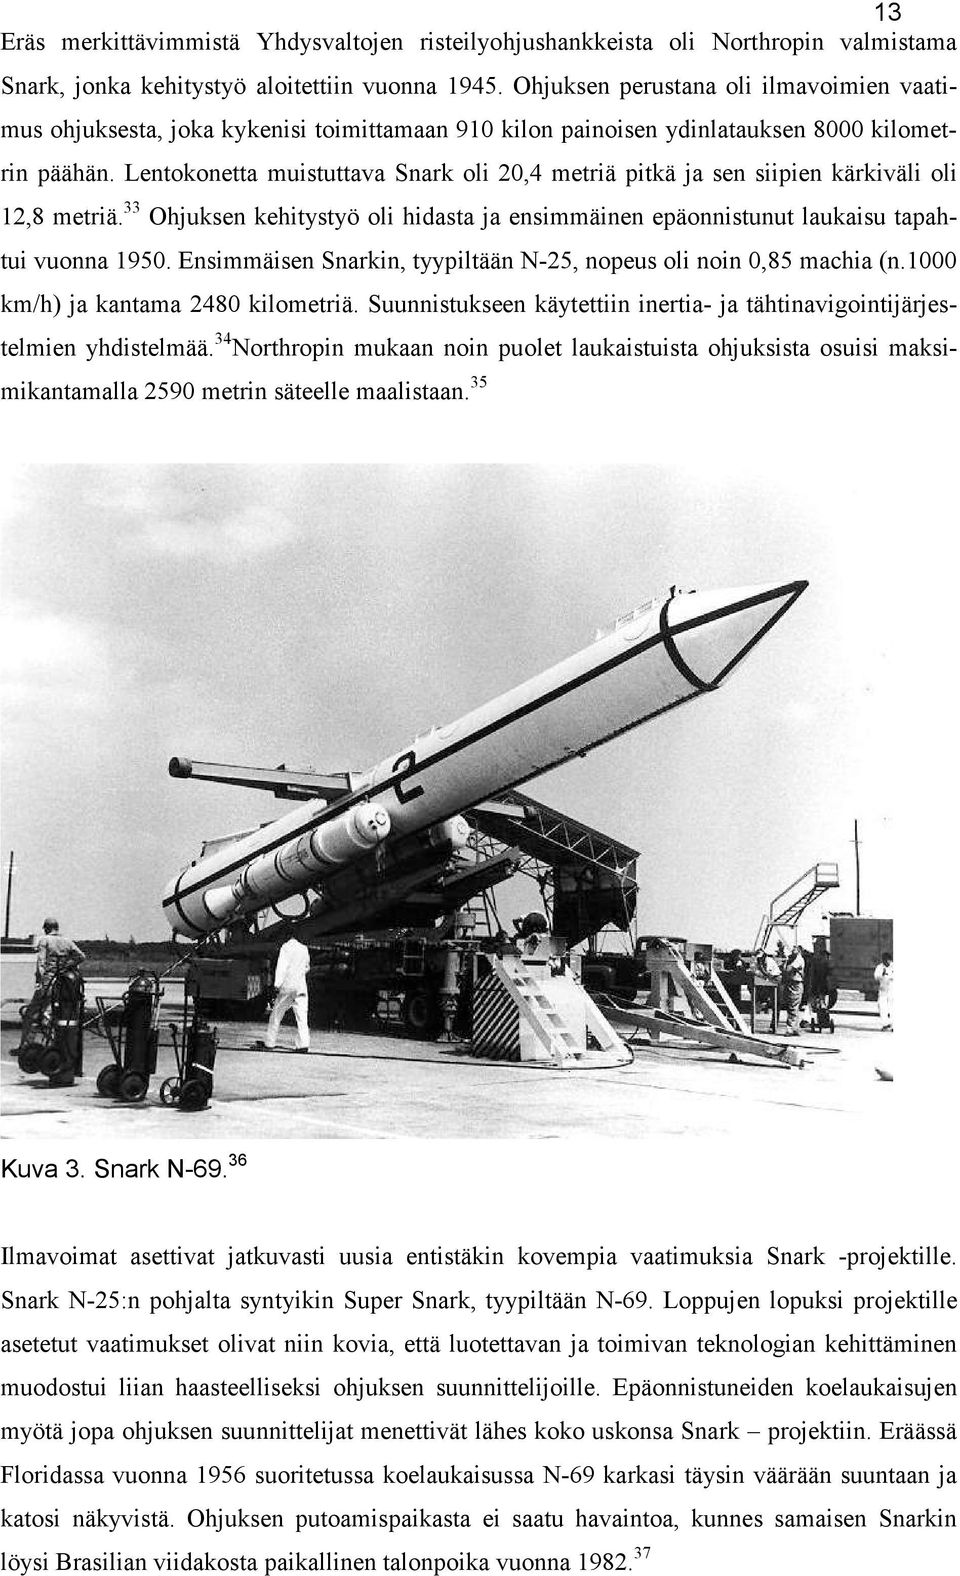 Lentokonetta muistuttava Snark oli 20,4 metriä pitkä ja sen siipien kärkiväli oli 12,8 metriä. 33 Ohjuksen kehitystyö oli hidasta ja ensimmäinen epäonnistunut laukaisu tapahtui vuonna 1950.